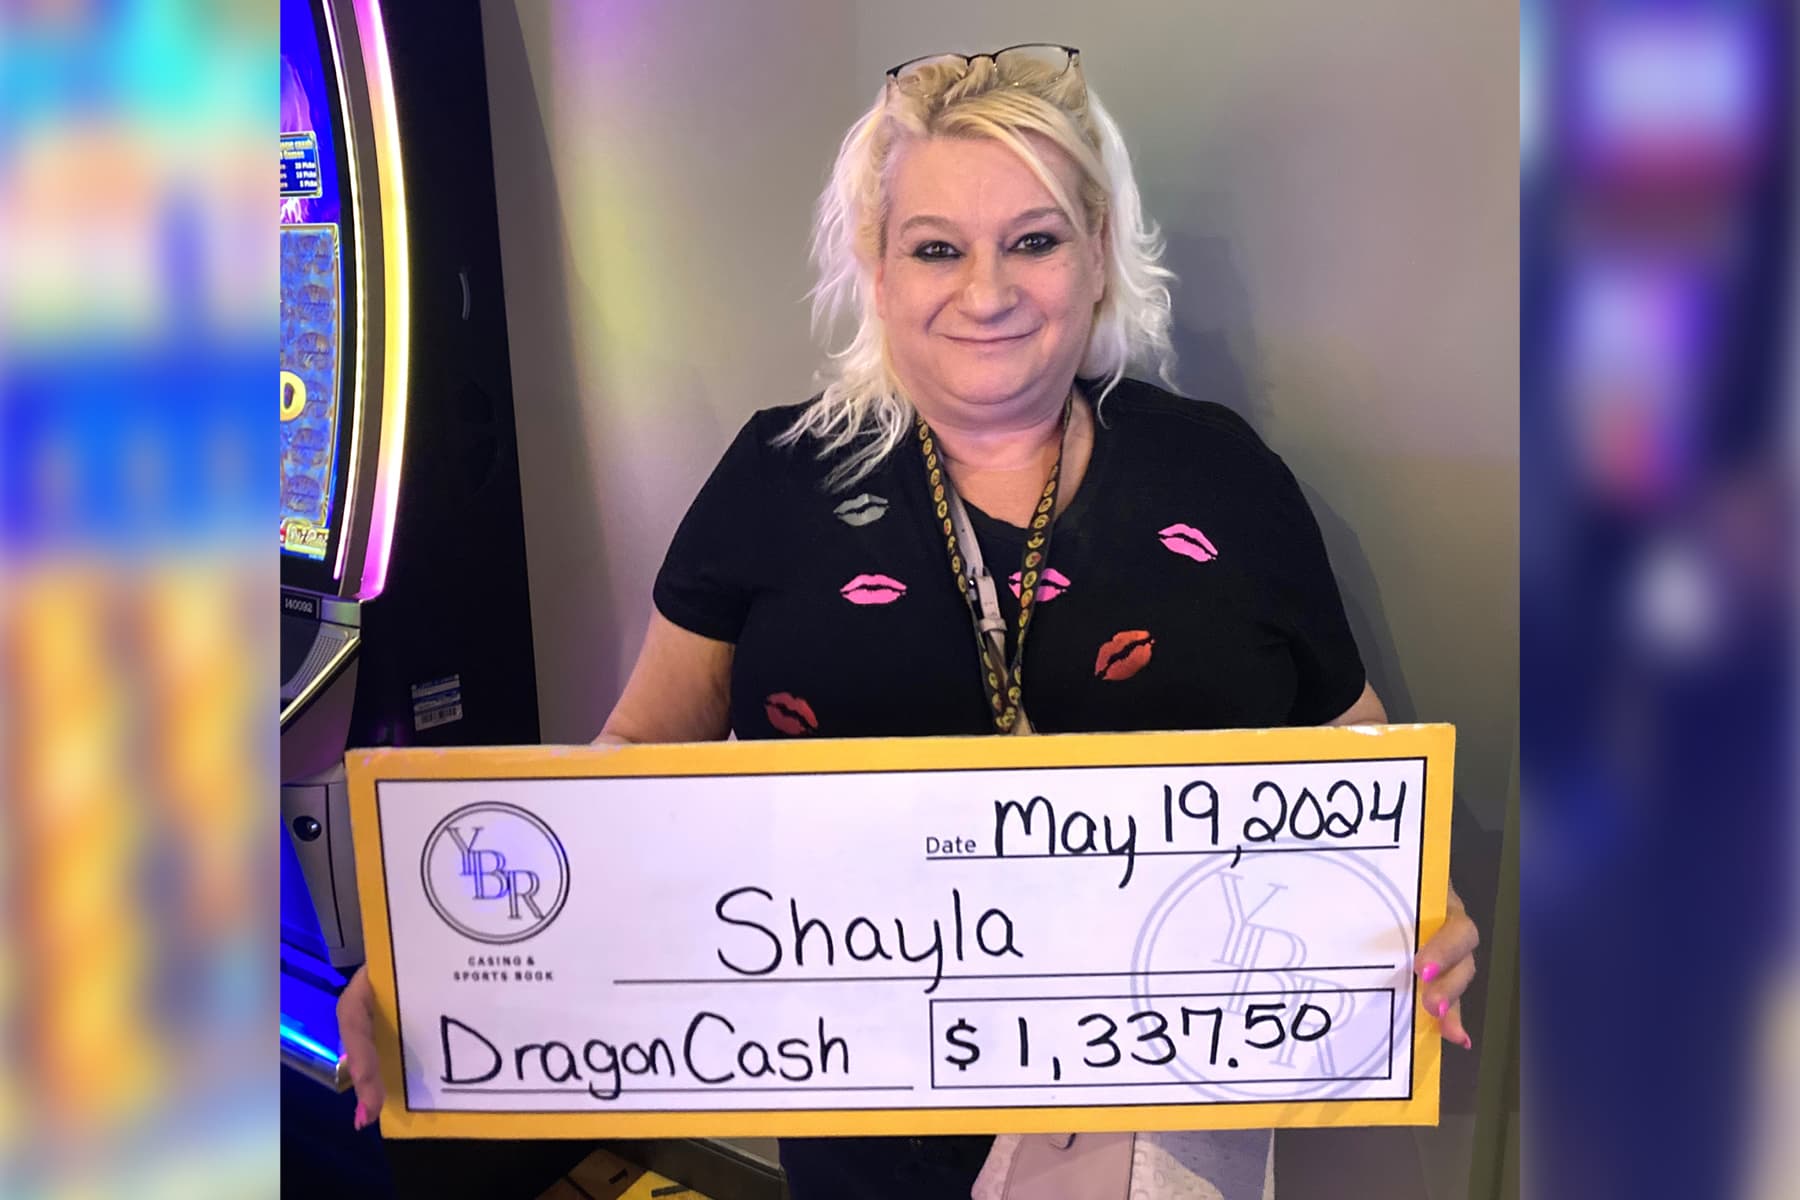 Shayla won $1,337